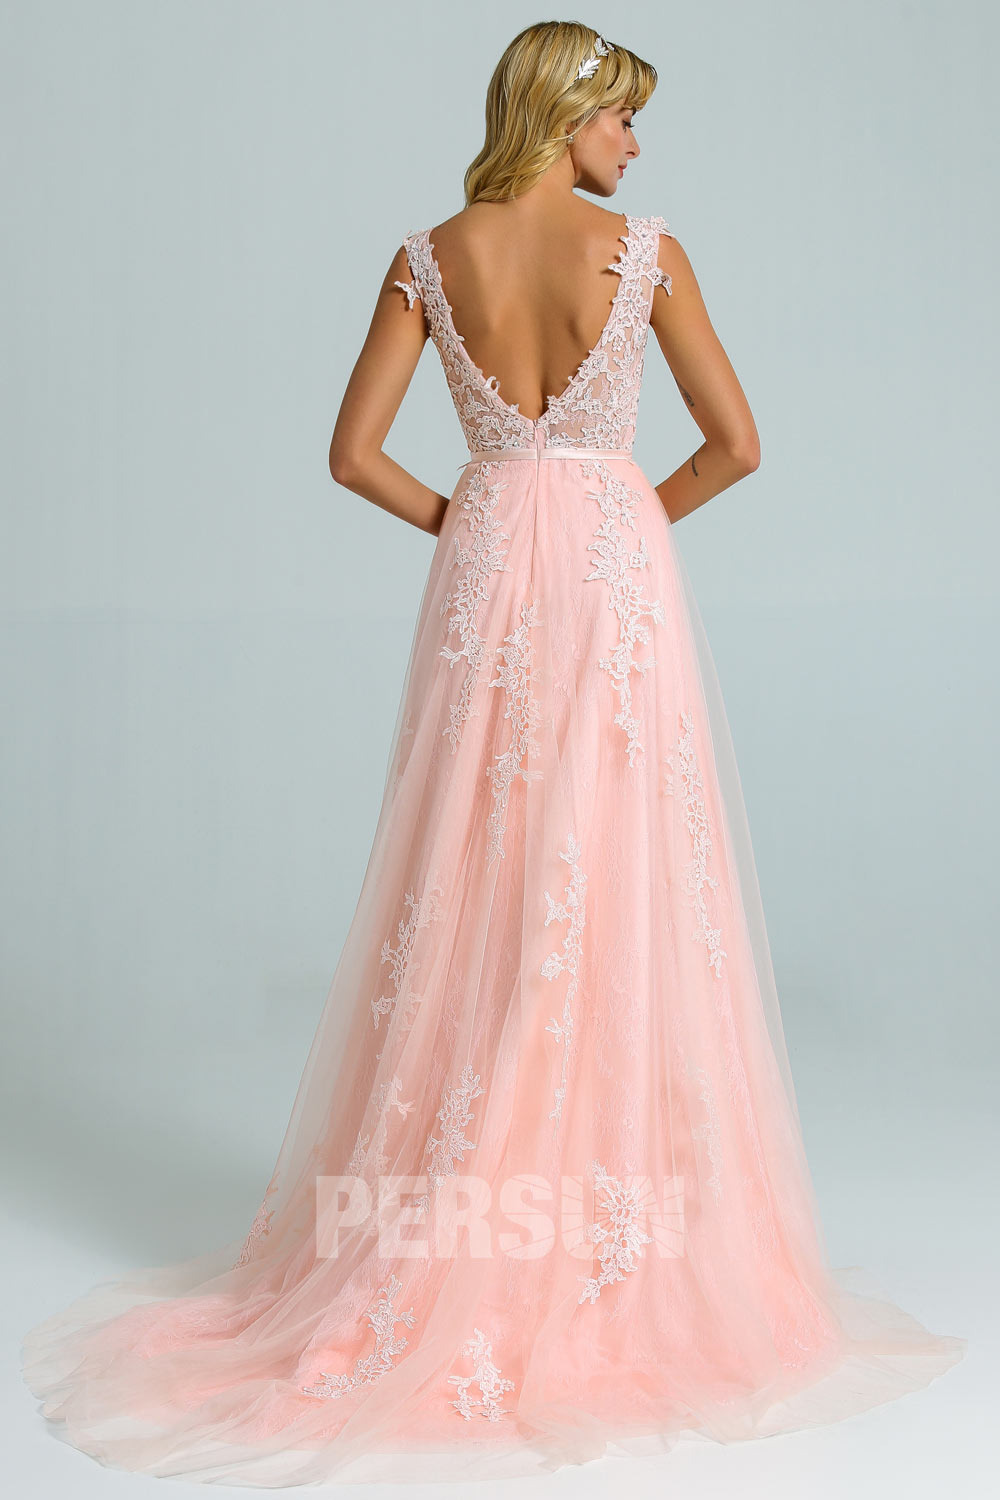 Elégant robe de soirée rose perle haut en dentelle guipure à dos ouvert